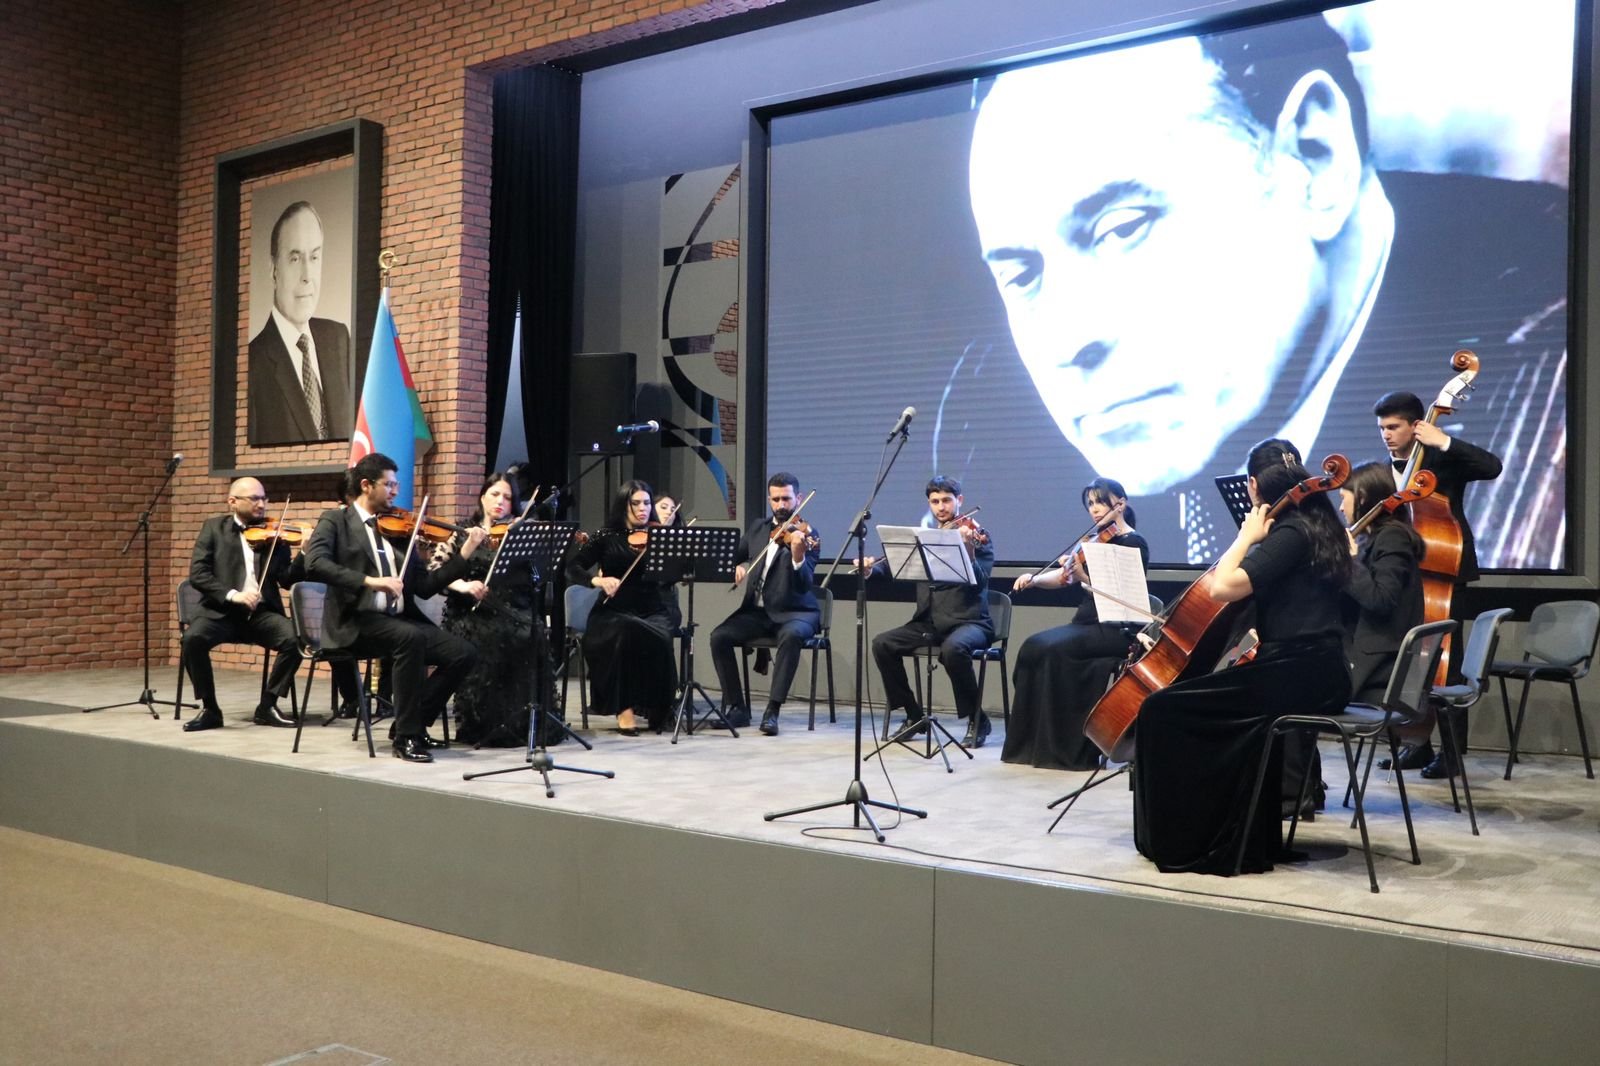 ASAPES-də Ümummilli lider Heydər Əliyevin anadan olmasının 100-cü ildönümünə həsr edilmiş konsert olub